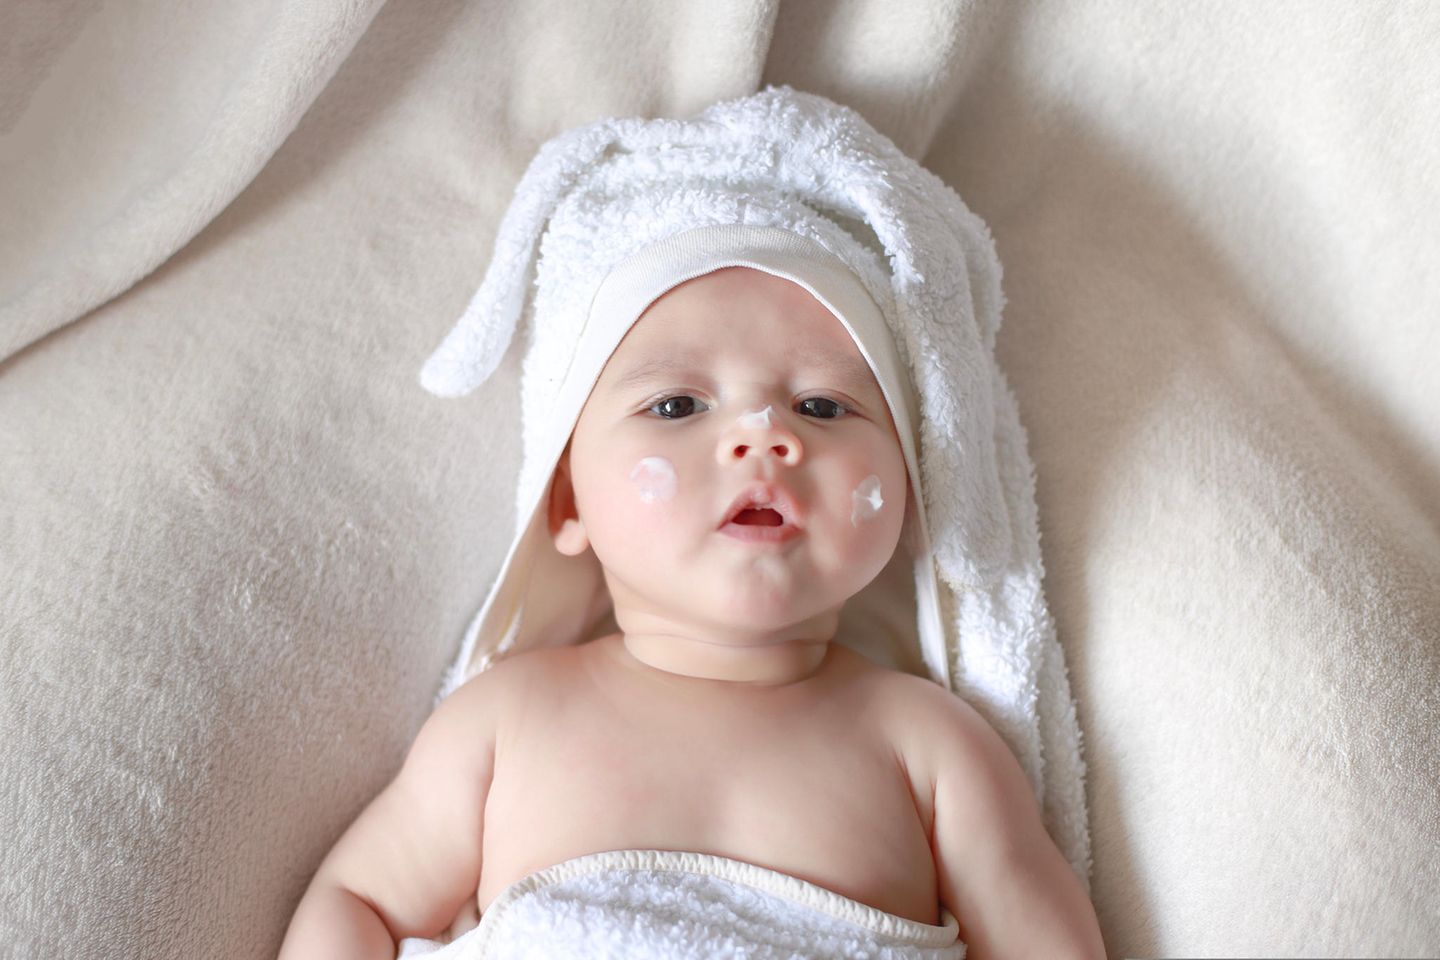 Öko-Test: Baby mit Creme im Gesicht